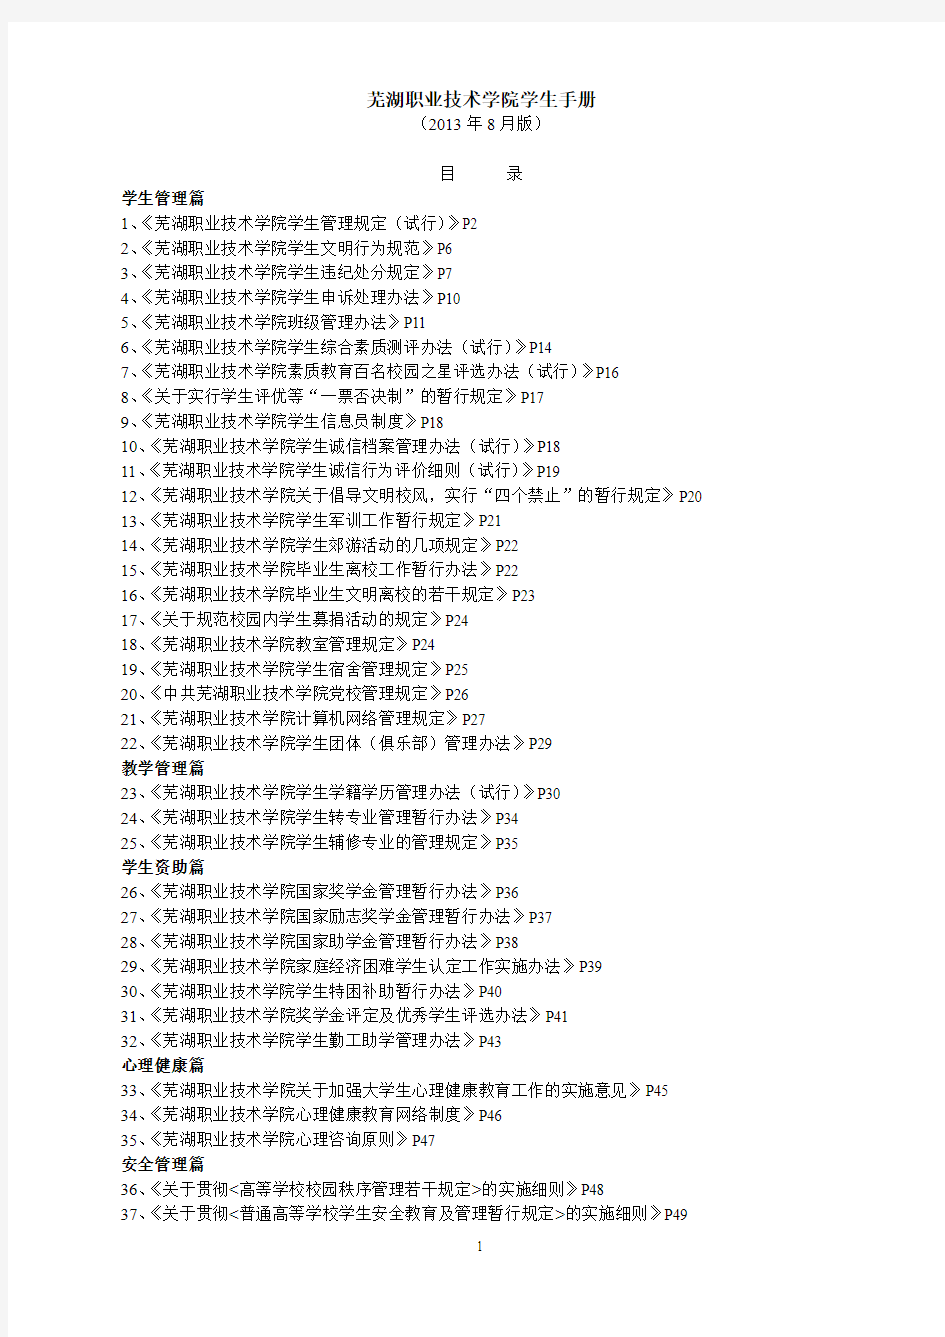 芜湖职业技术学院学生手册-正式版